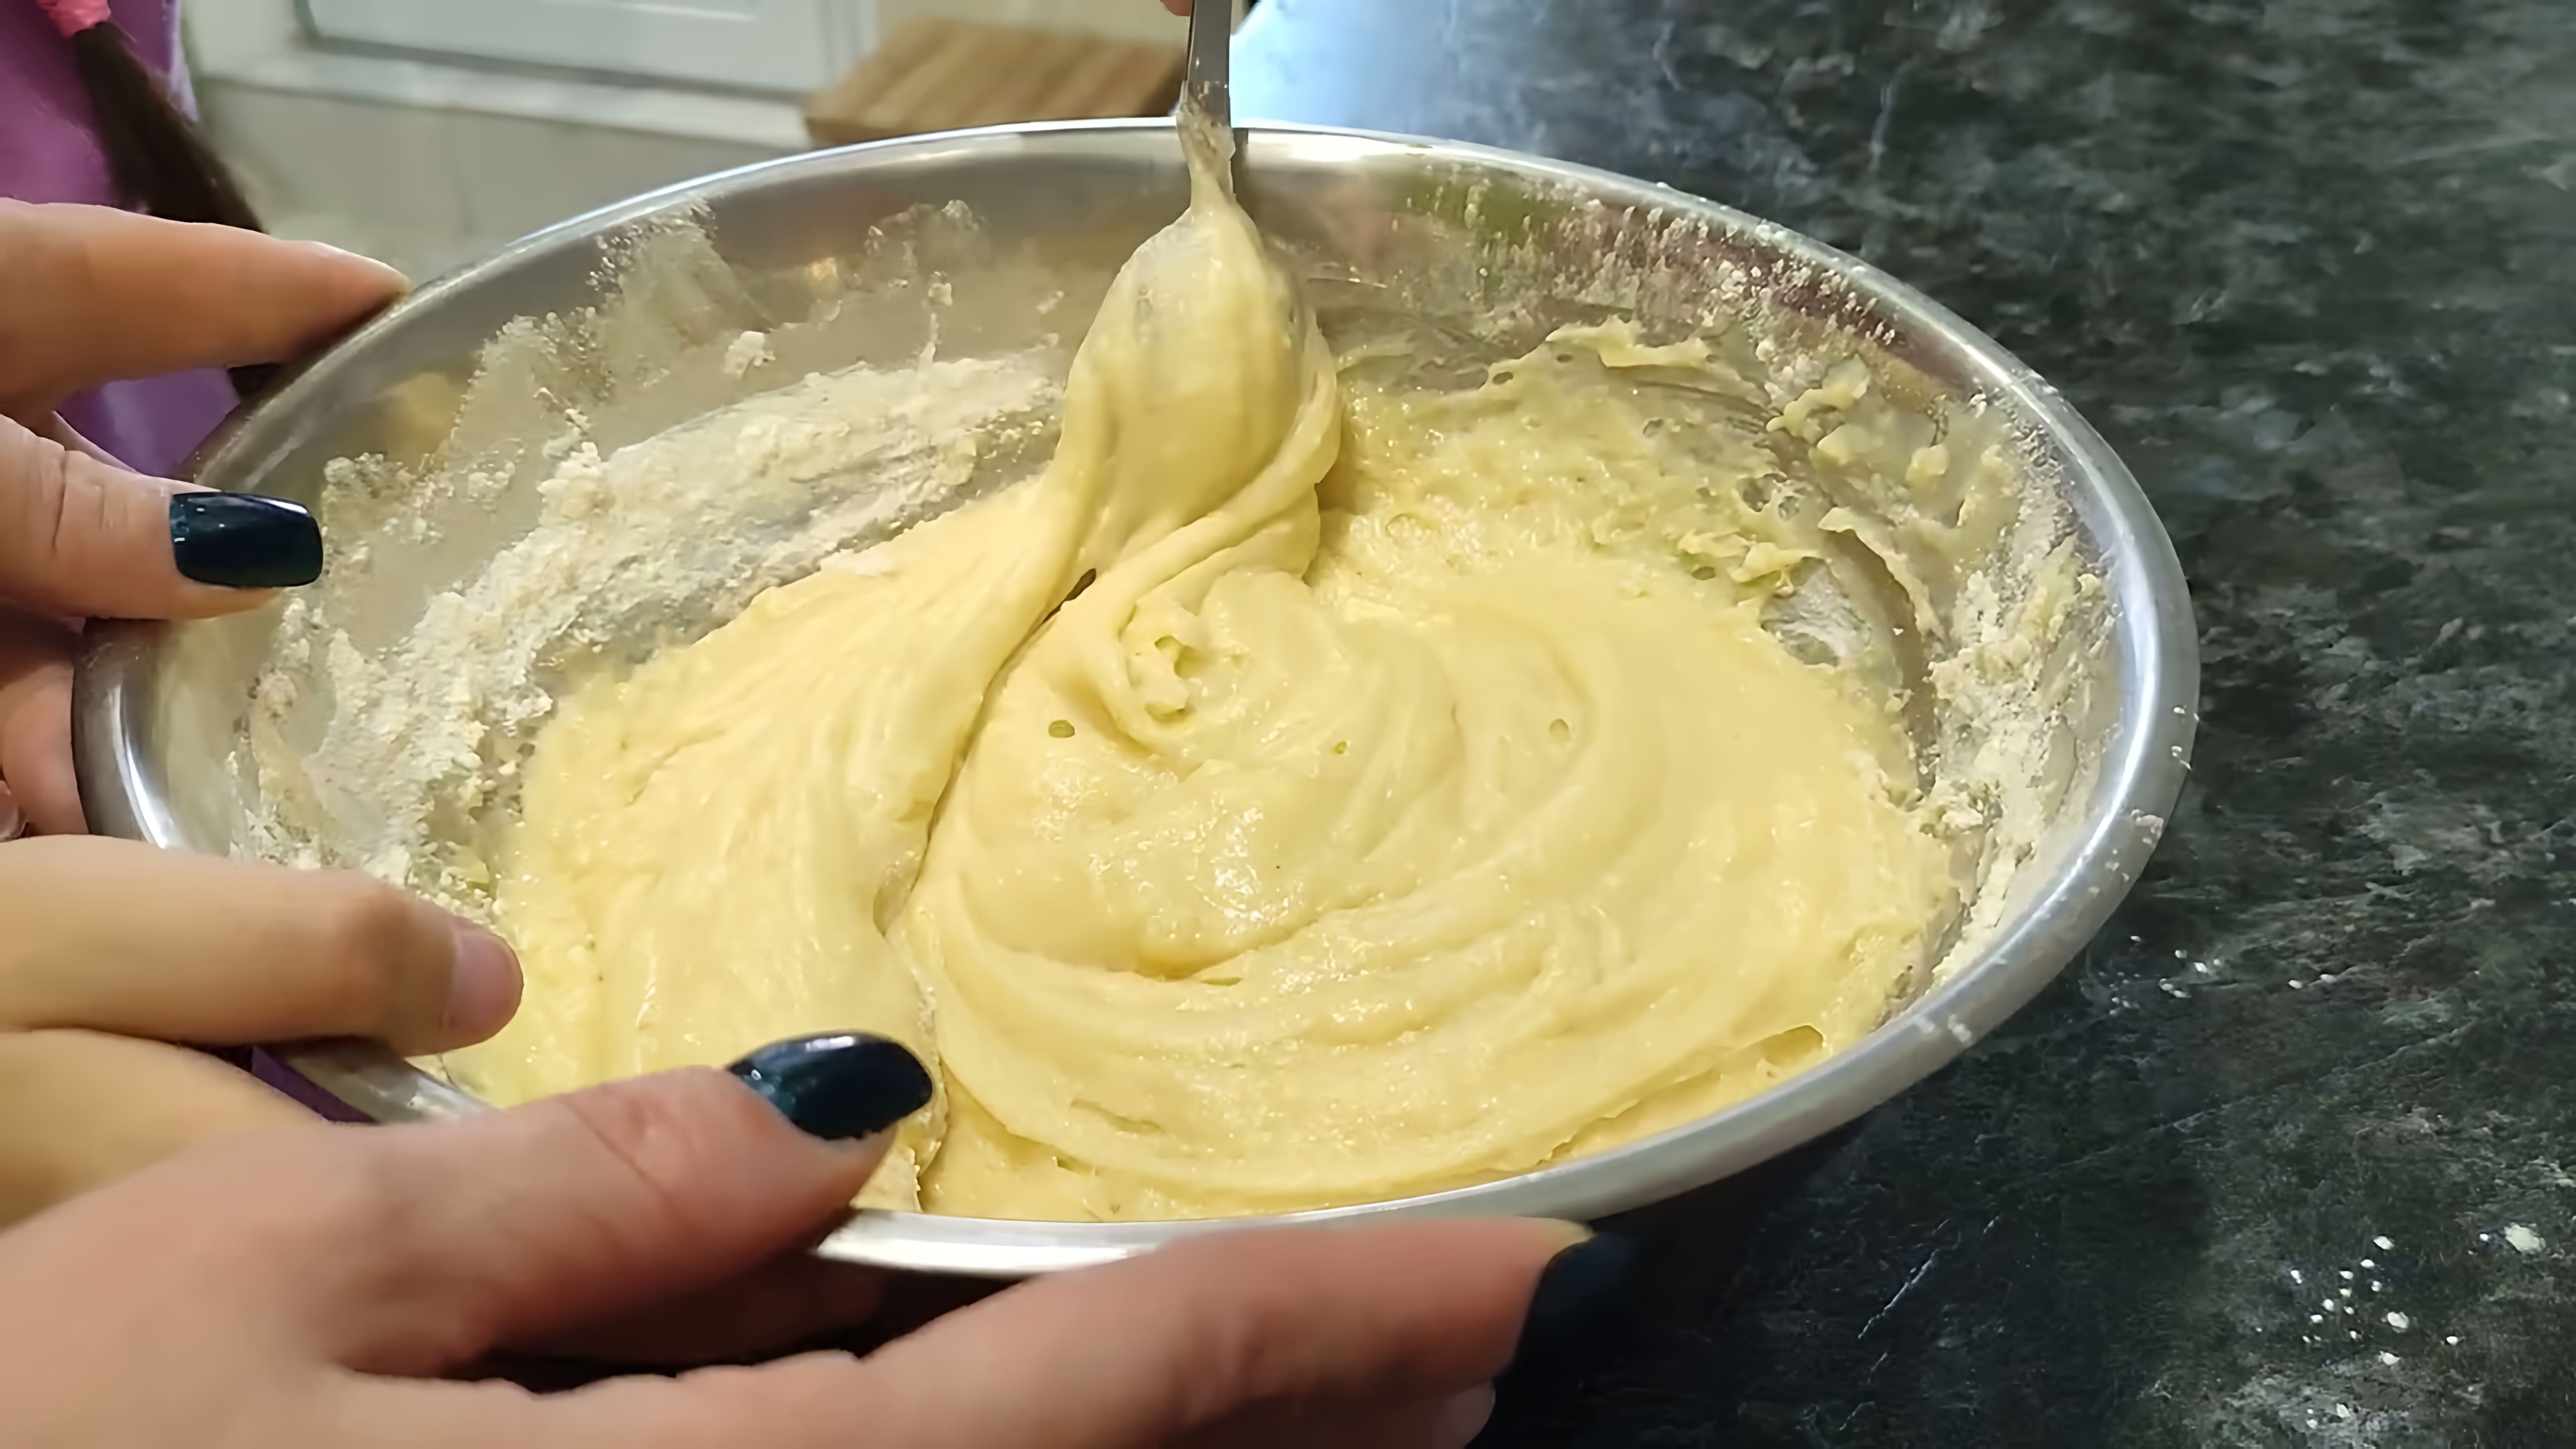 В этом видео демонстрируется процесс приготовления печенья "Грибочки" из советской формы